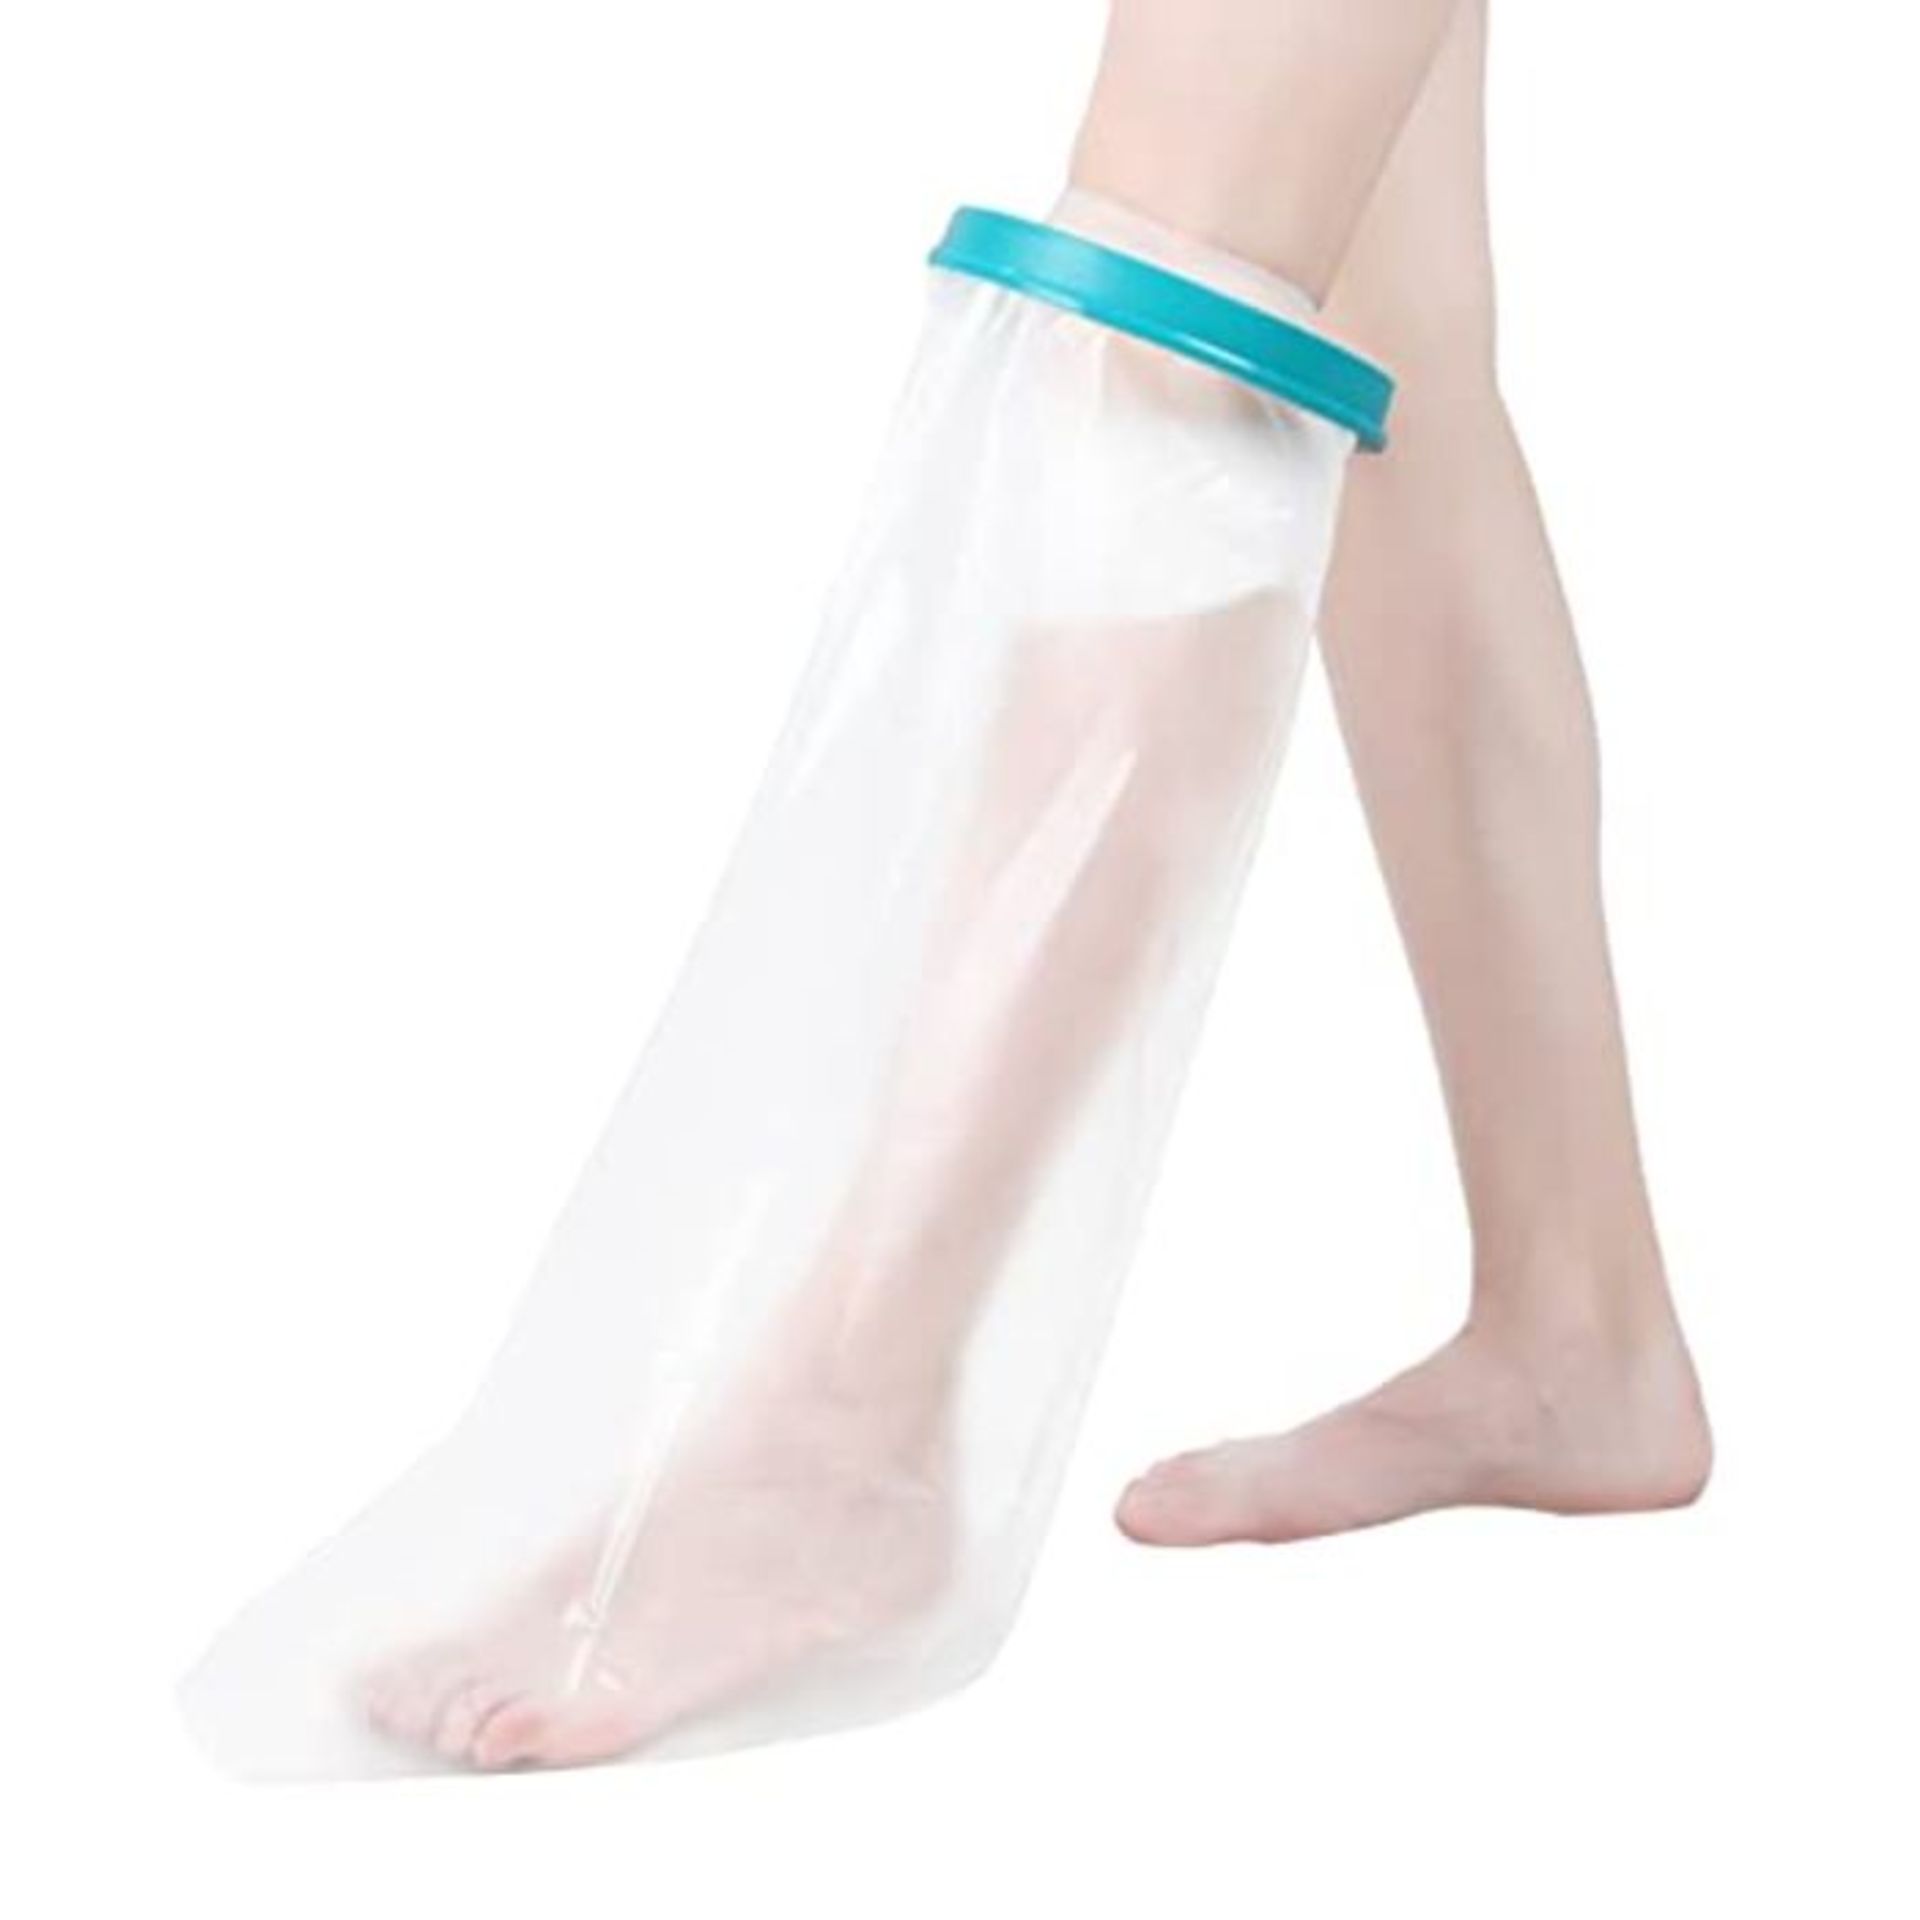 Fasola Cast Cover Full Leg for Shower, Waterproof Plaster Dressing Protector for Broke